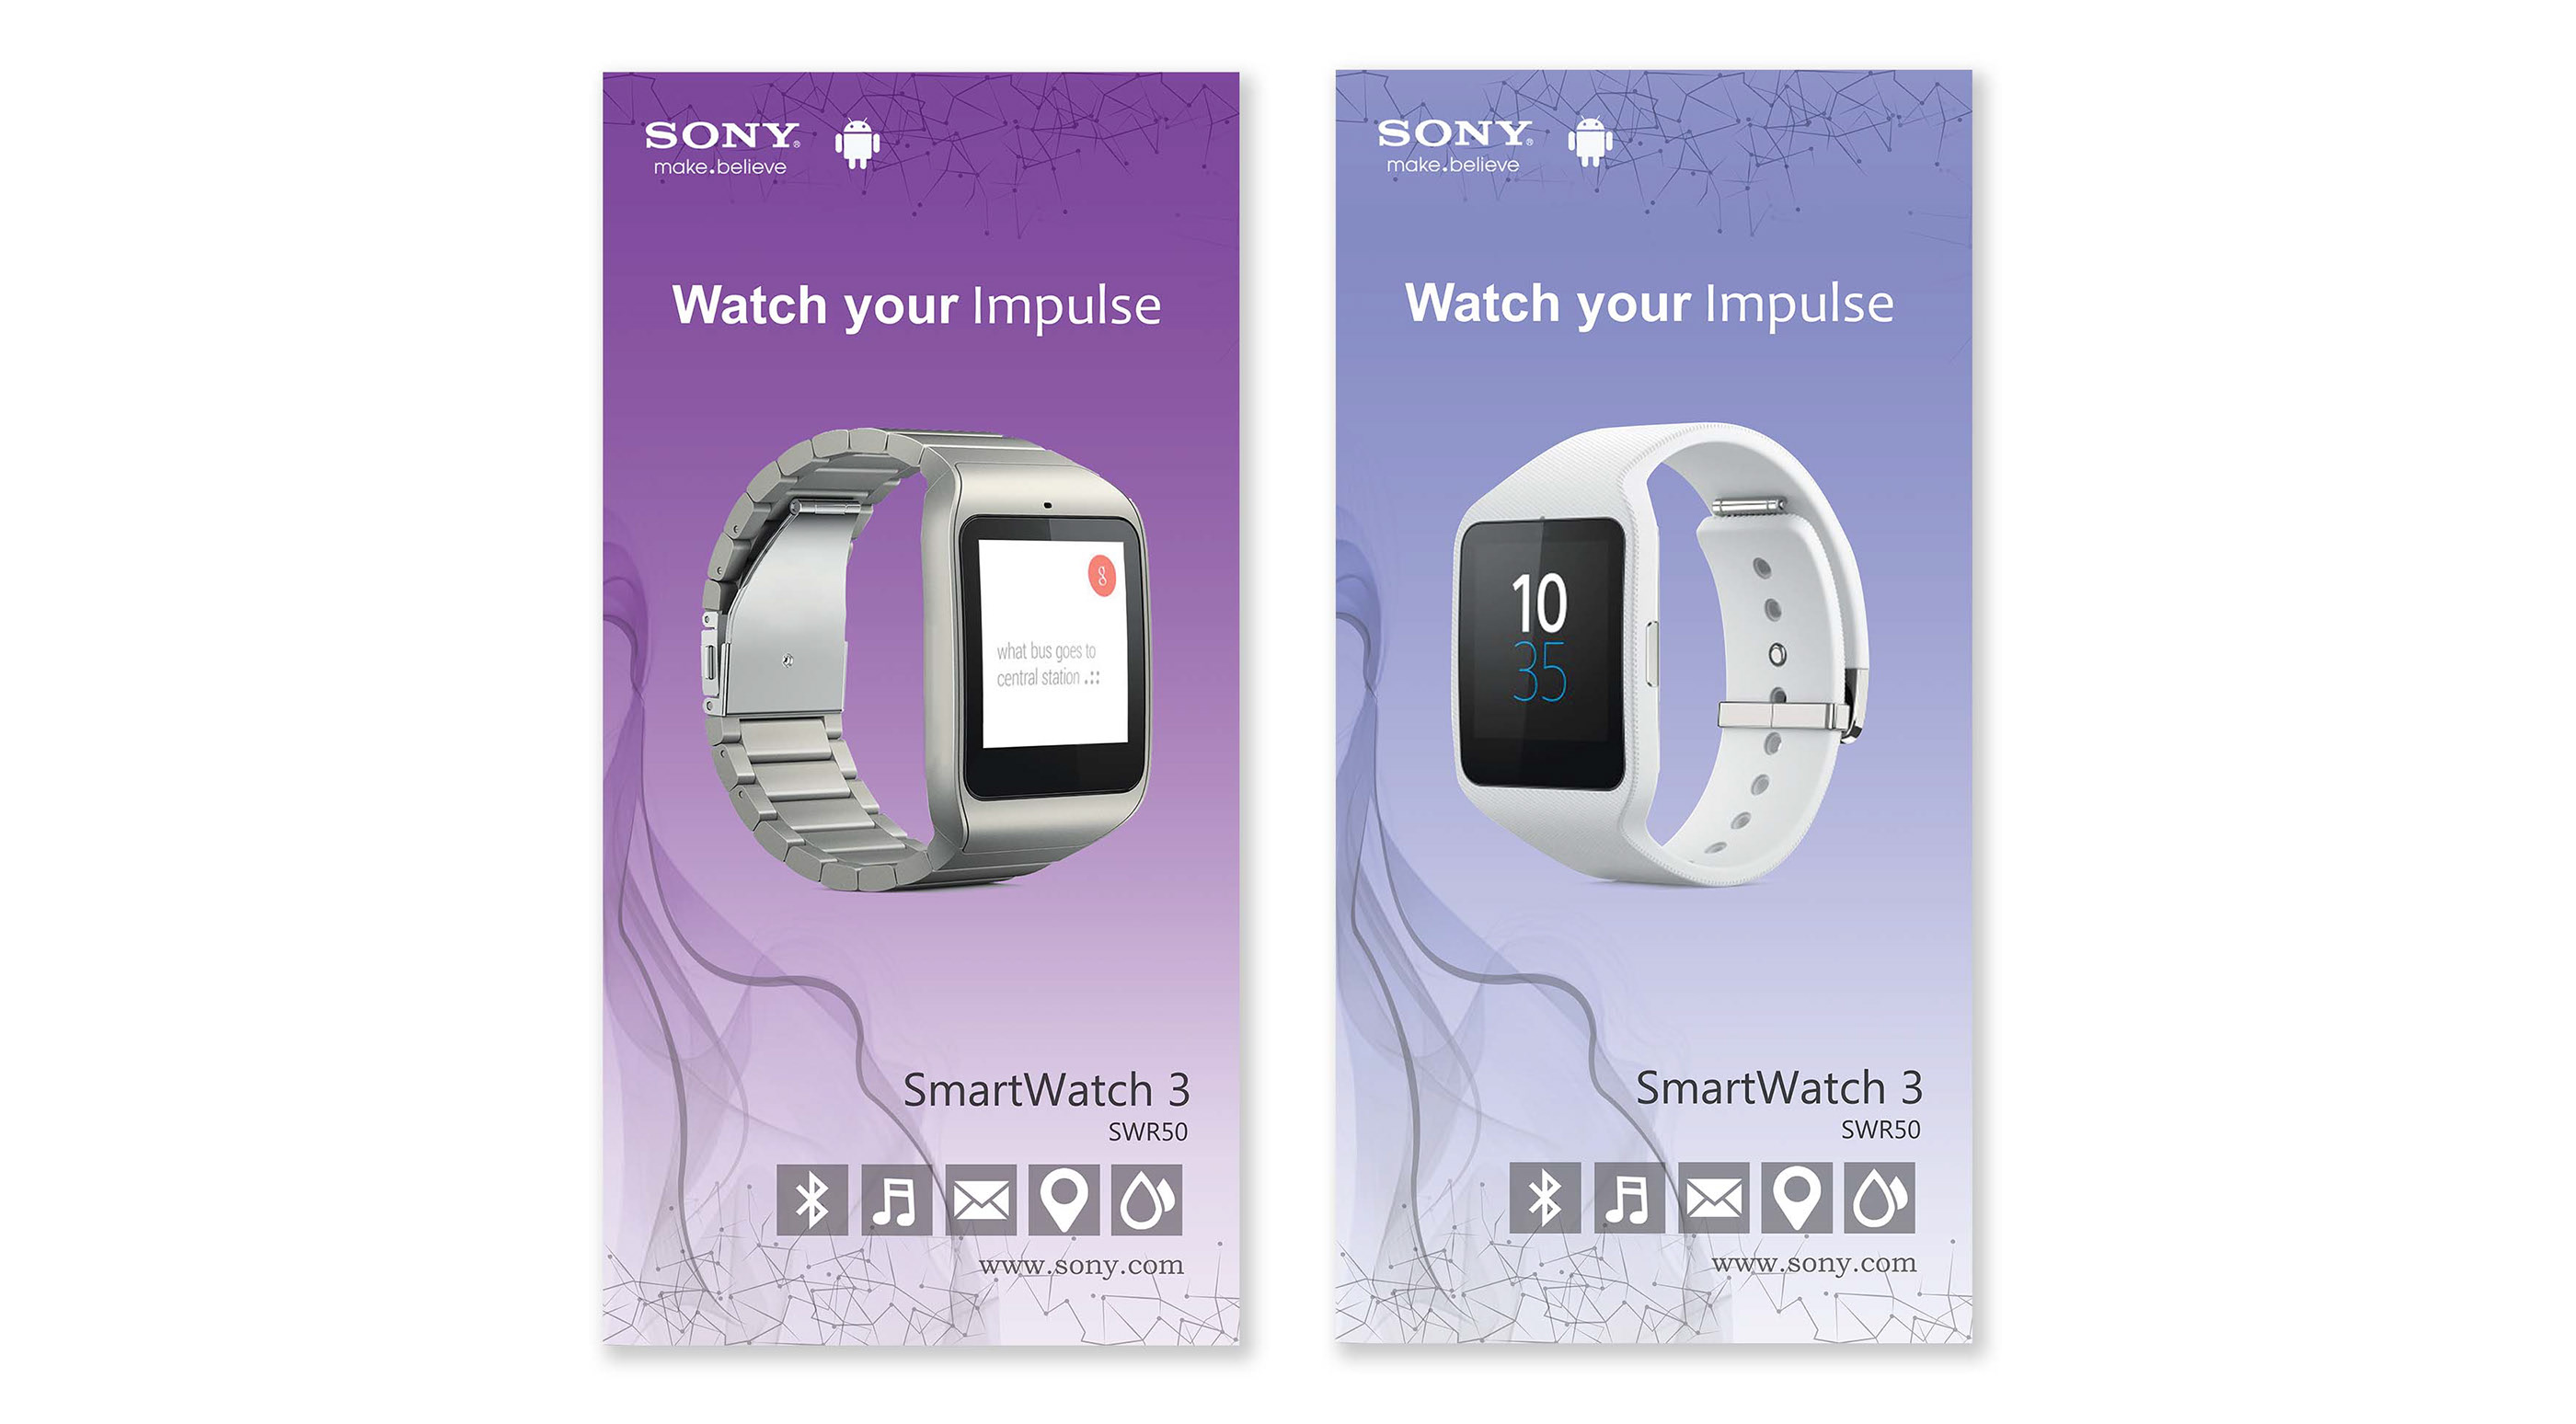 For app sony iphone smartwatch 3 Best Wear